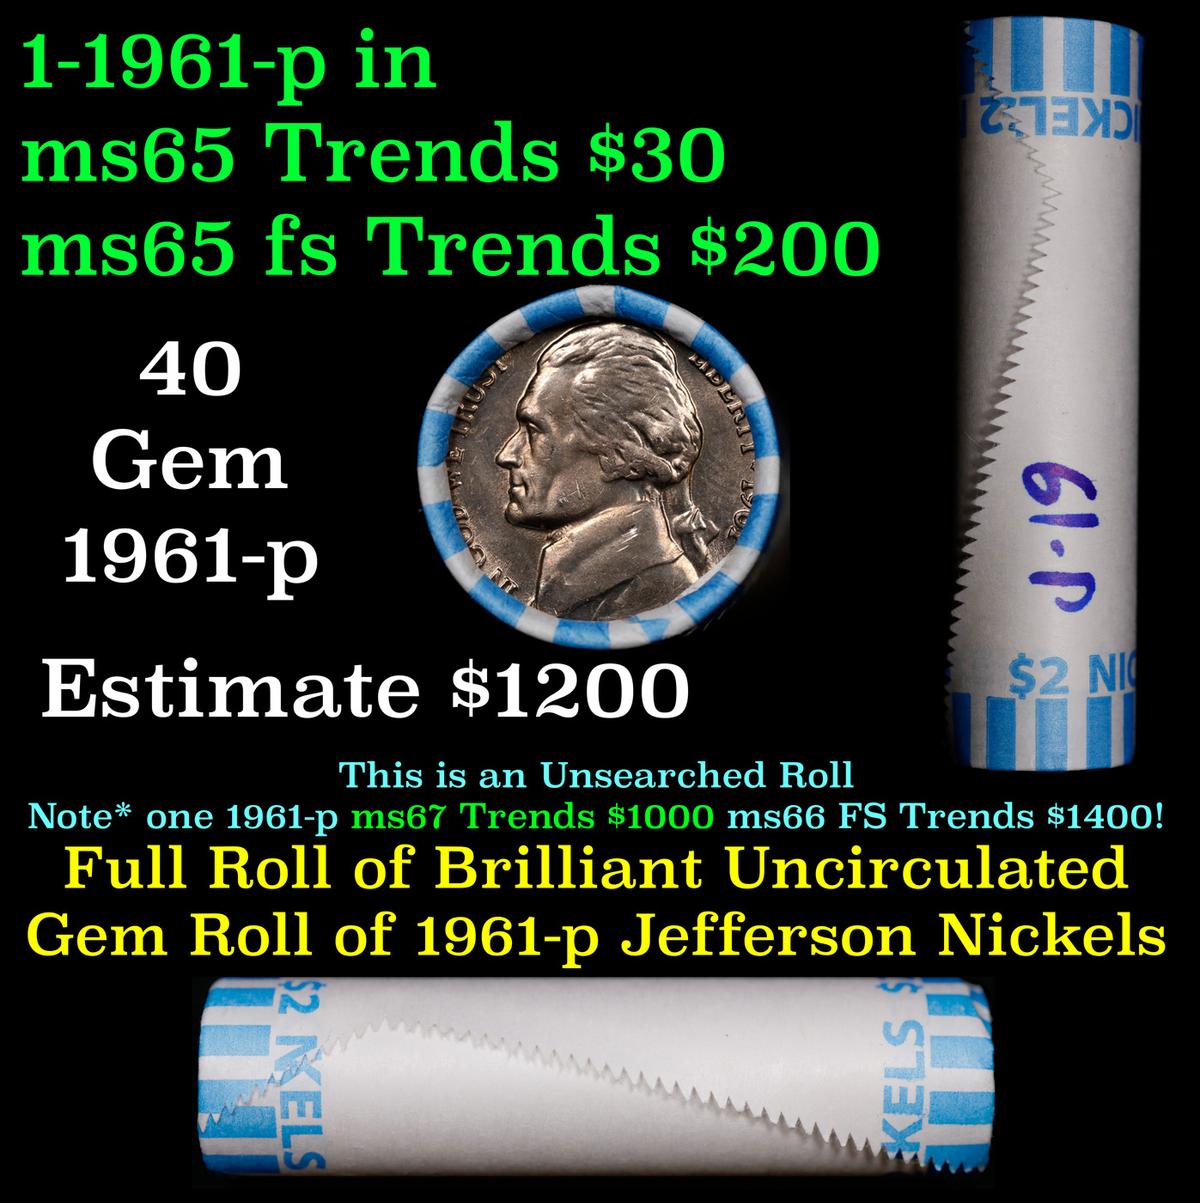 BU Shotgun Jefferson 5c roll, 1961-p 40 pcs Bank $2 Nickel Wrapper